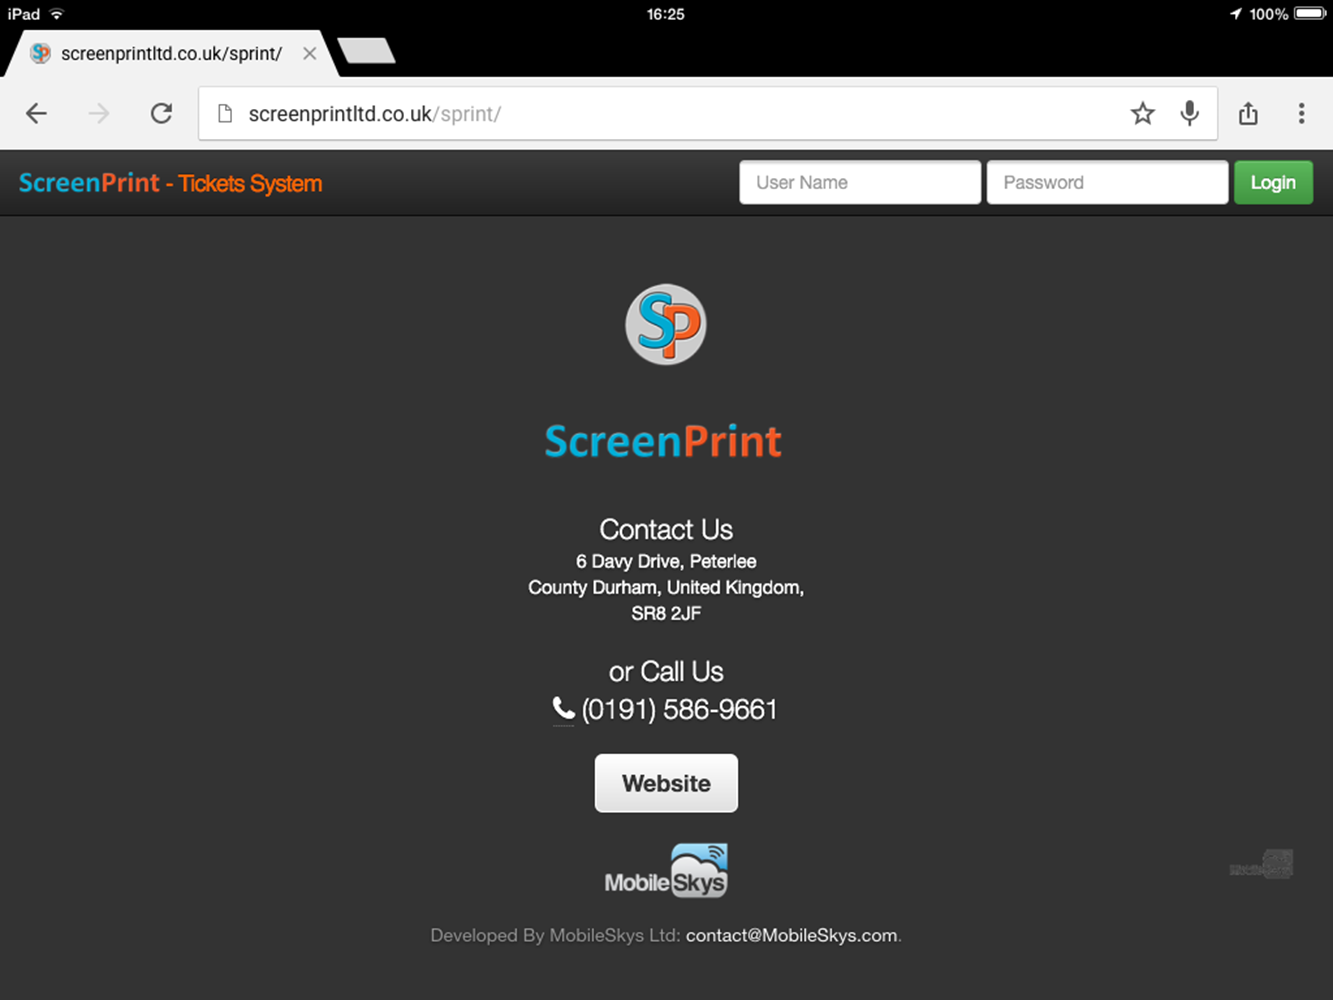 ScreenPrint Ltd